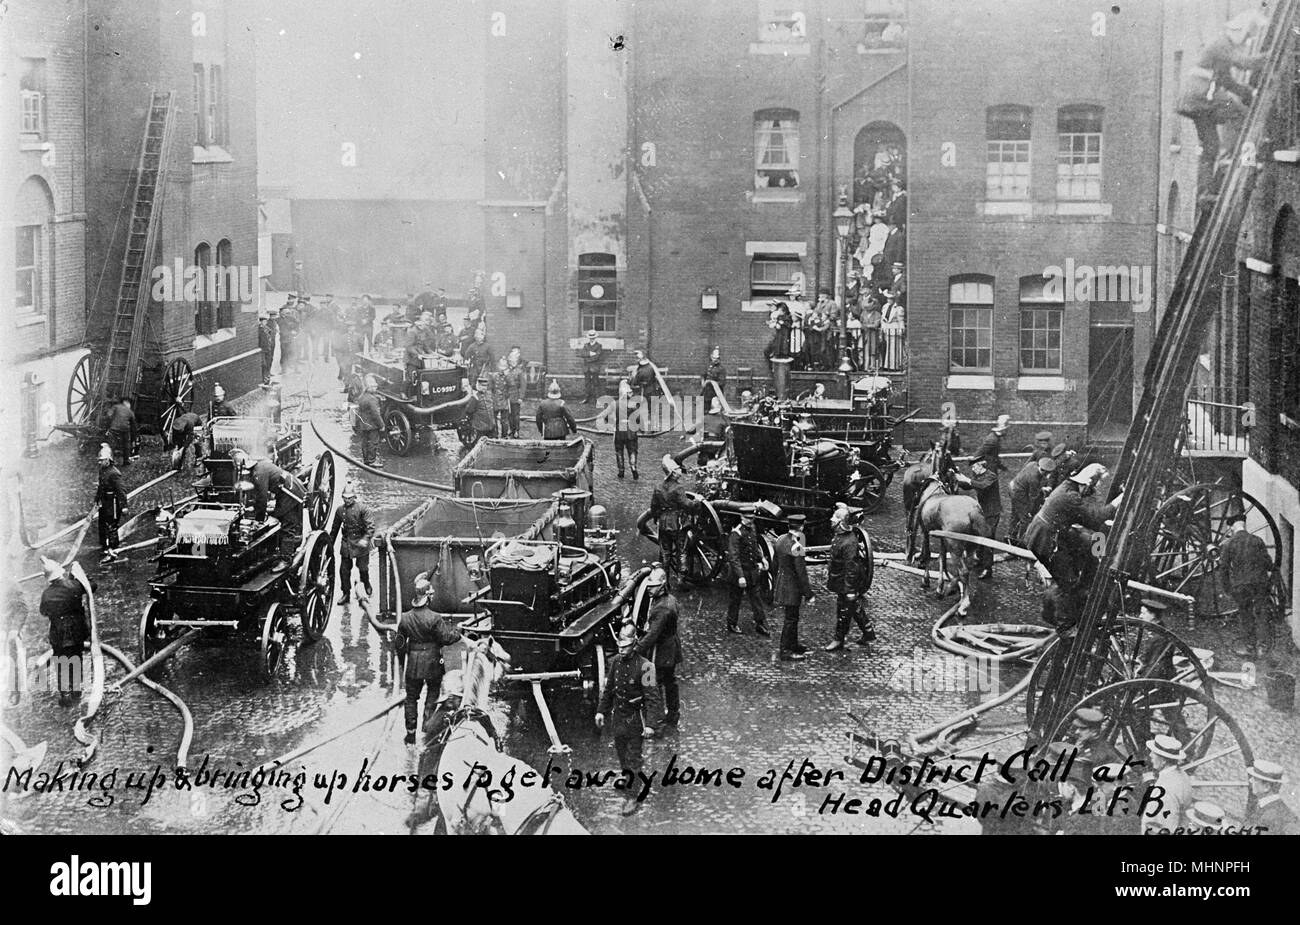 Londoner Feuerwehr, Southwark HQ, London - Bilden und Pferde Weg nach Hause nach Bezirk Anruf in der Zentrale zu erhalten. Datum: ca. 1905 Stockfoto